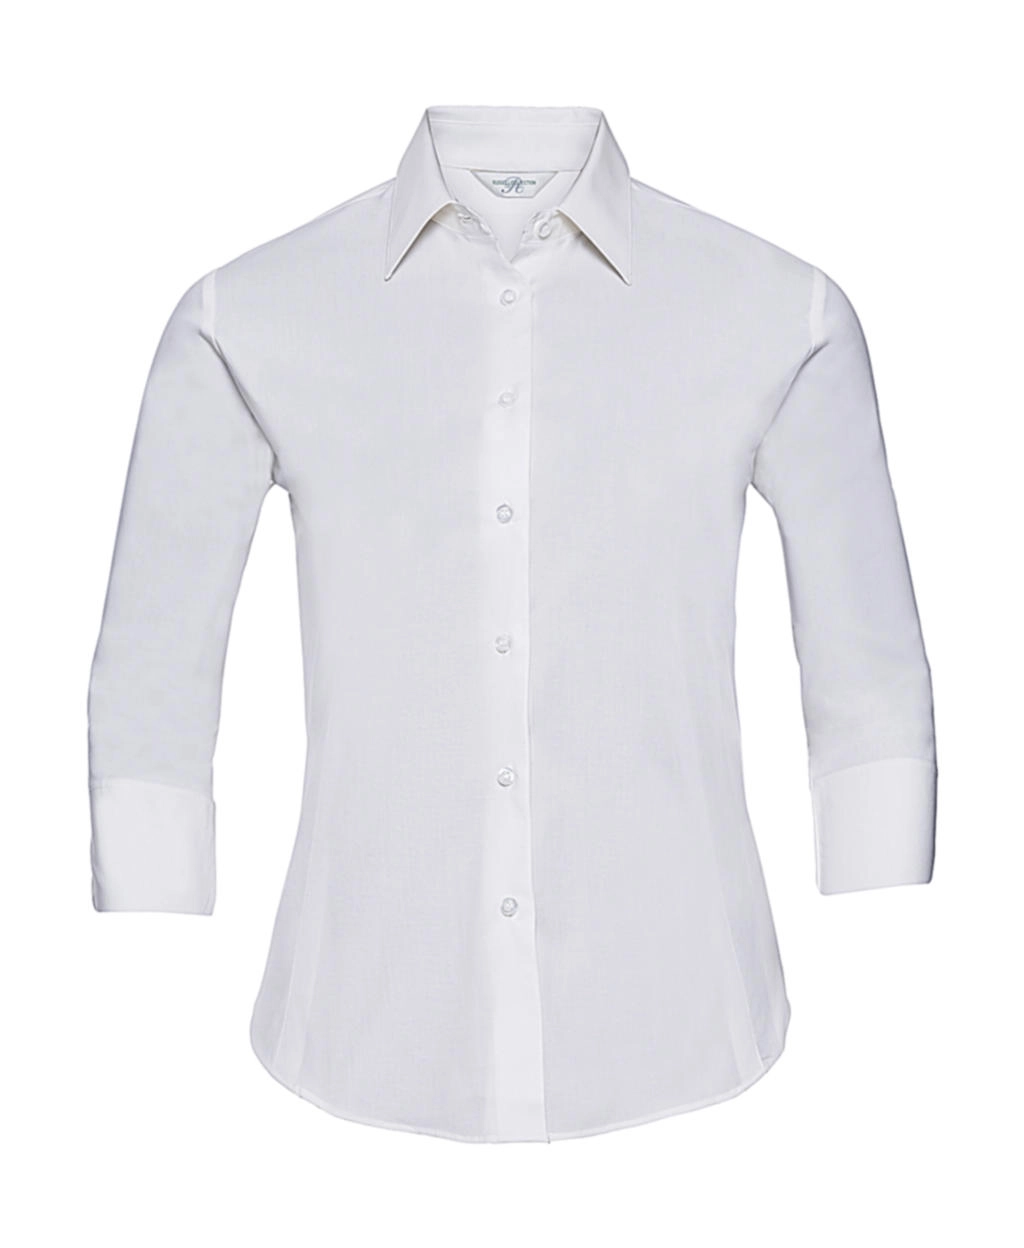 Ladies` 3/4 Sleeve Easy Care Fitted Shirt zum Besticken und Bedrucken in der Farbe White mit Ihren Logo, Schriftzug oder Motiv.